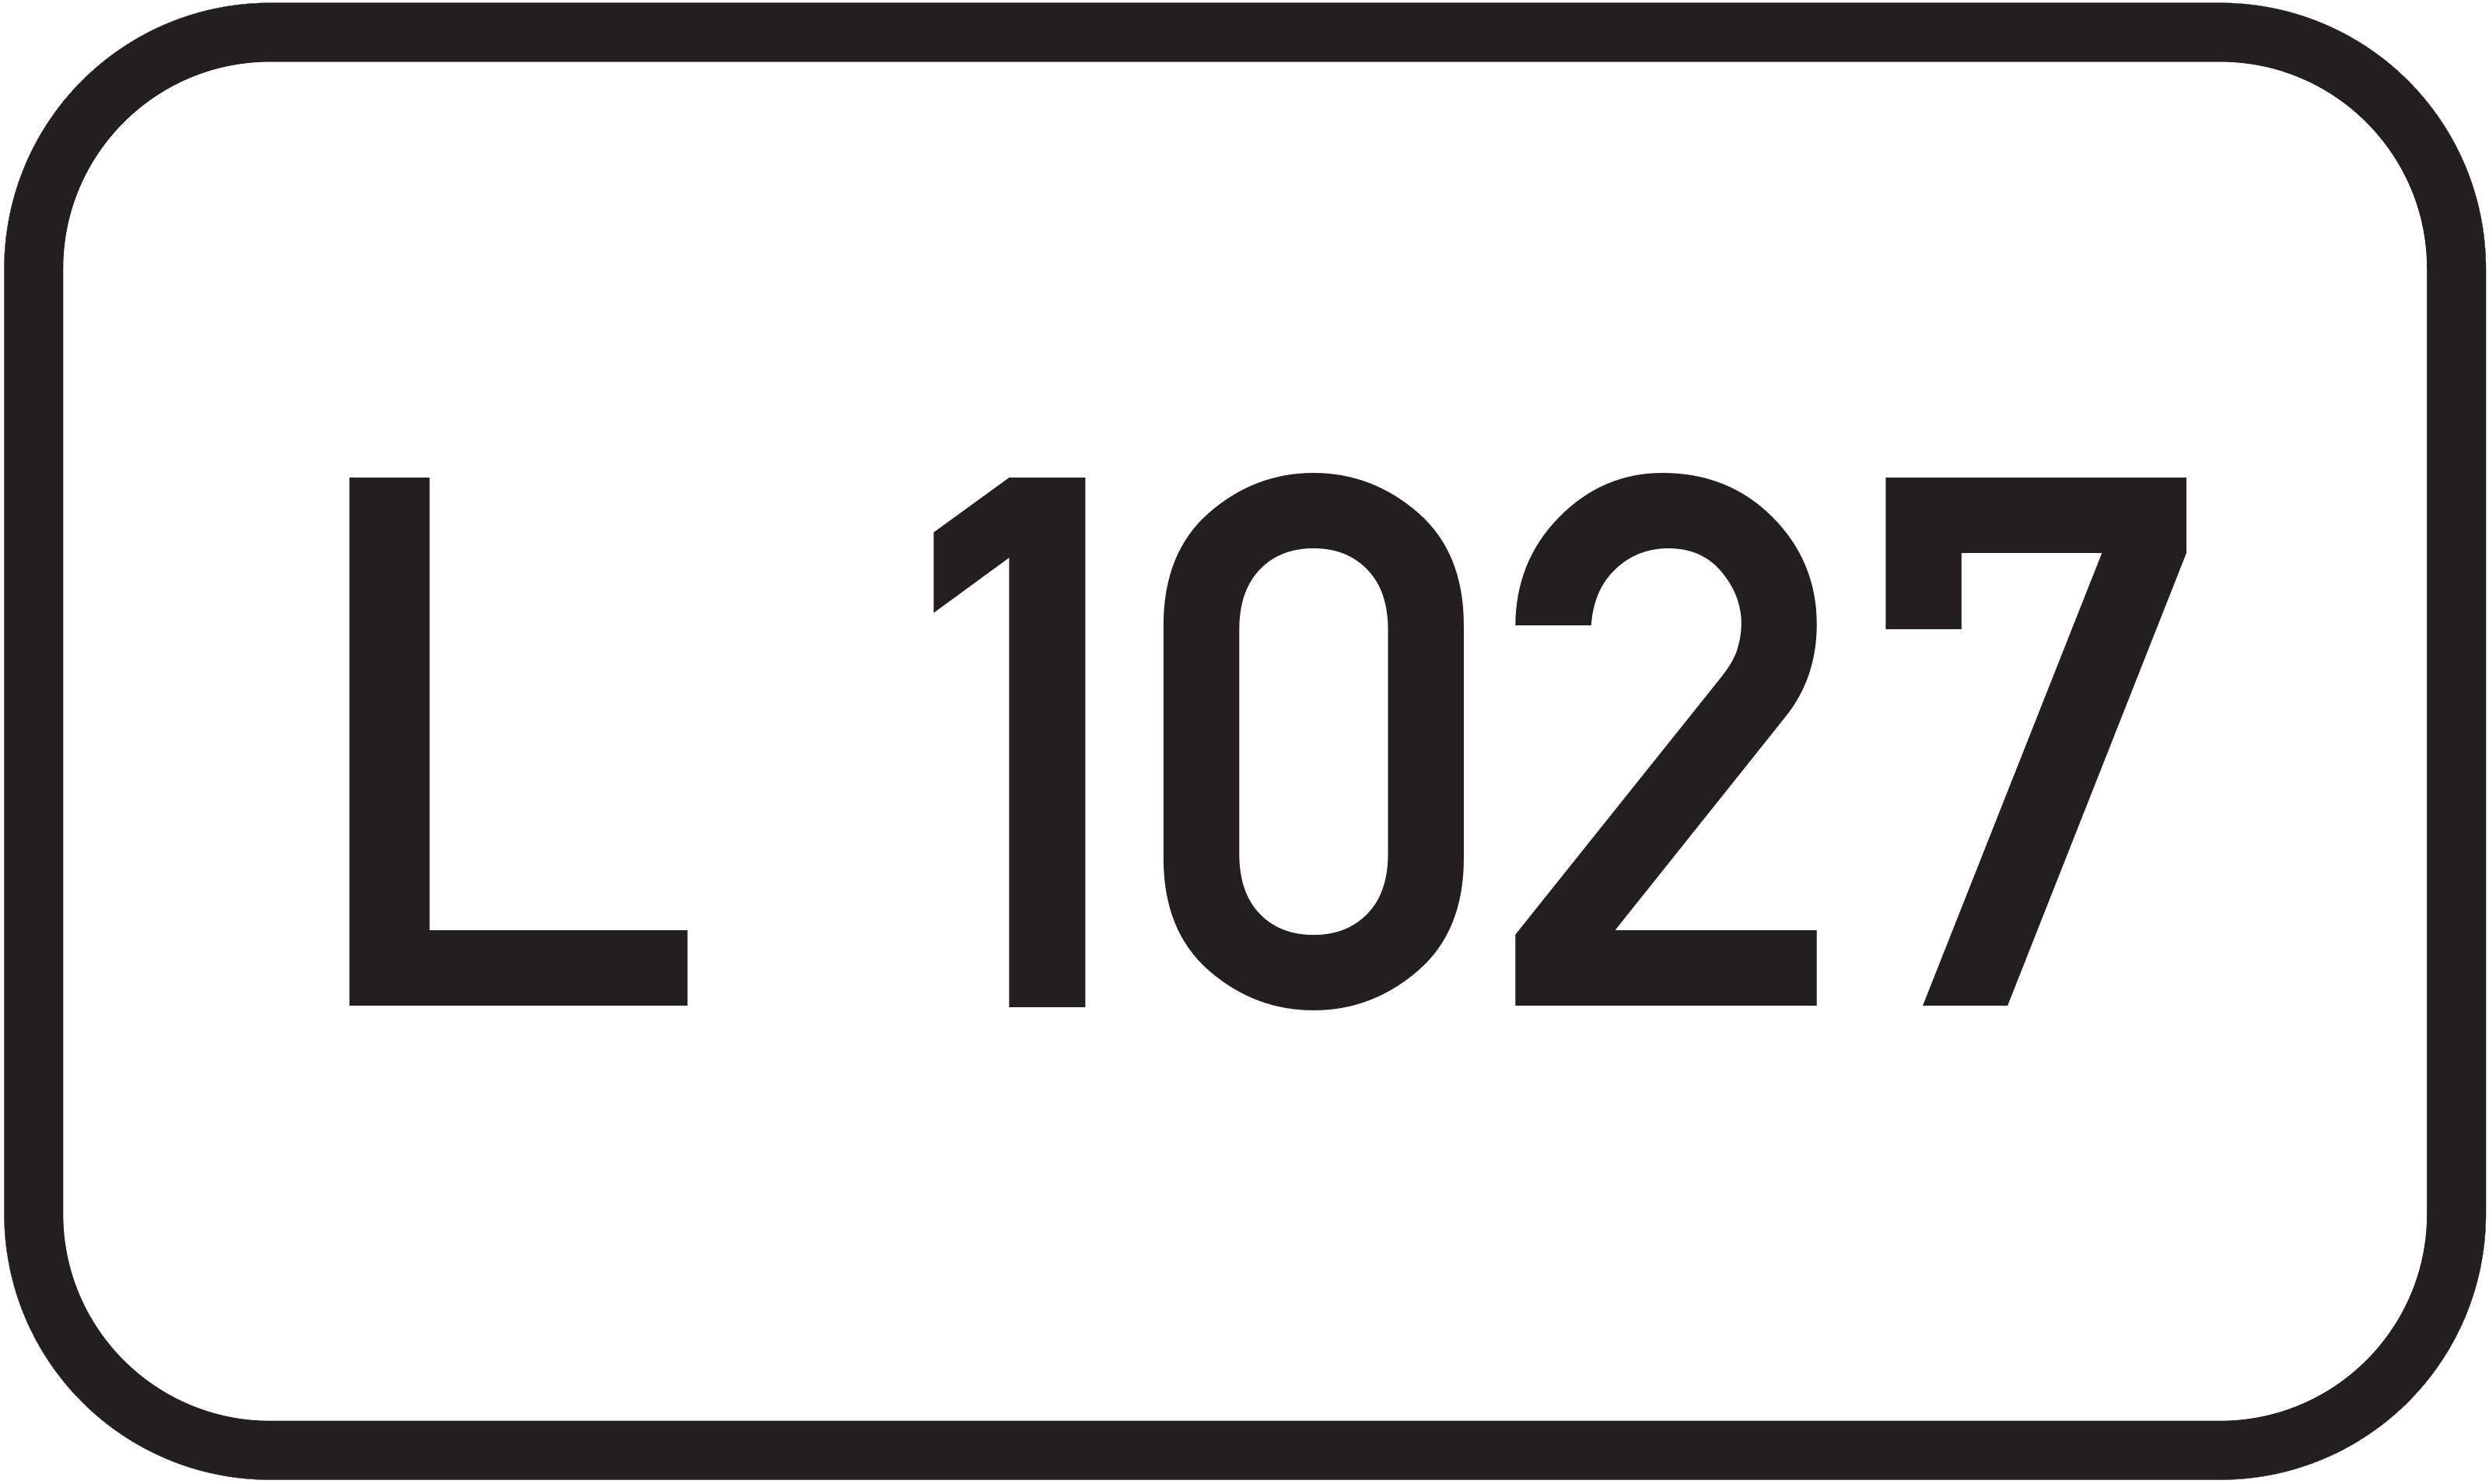 Landesstraße L 1027